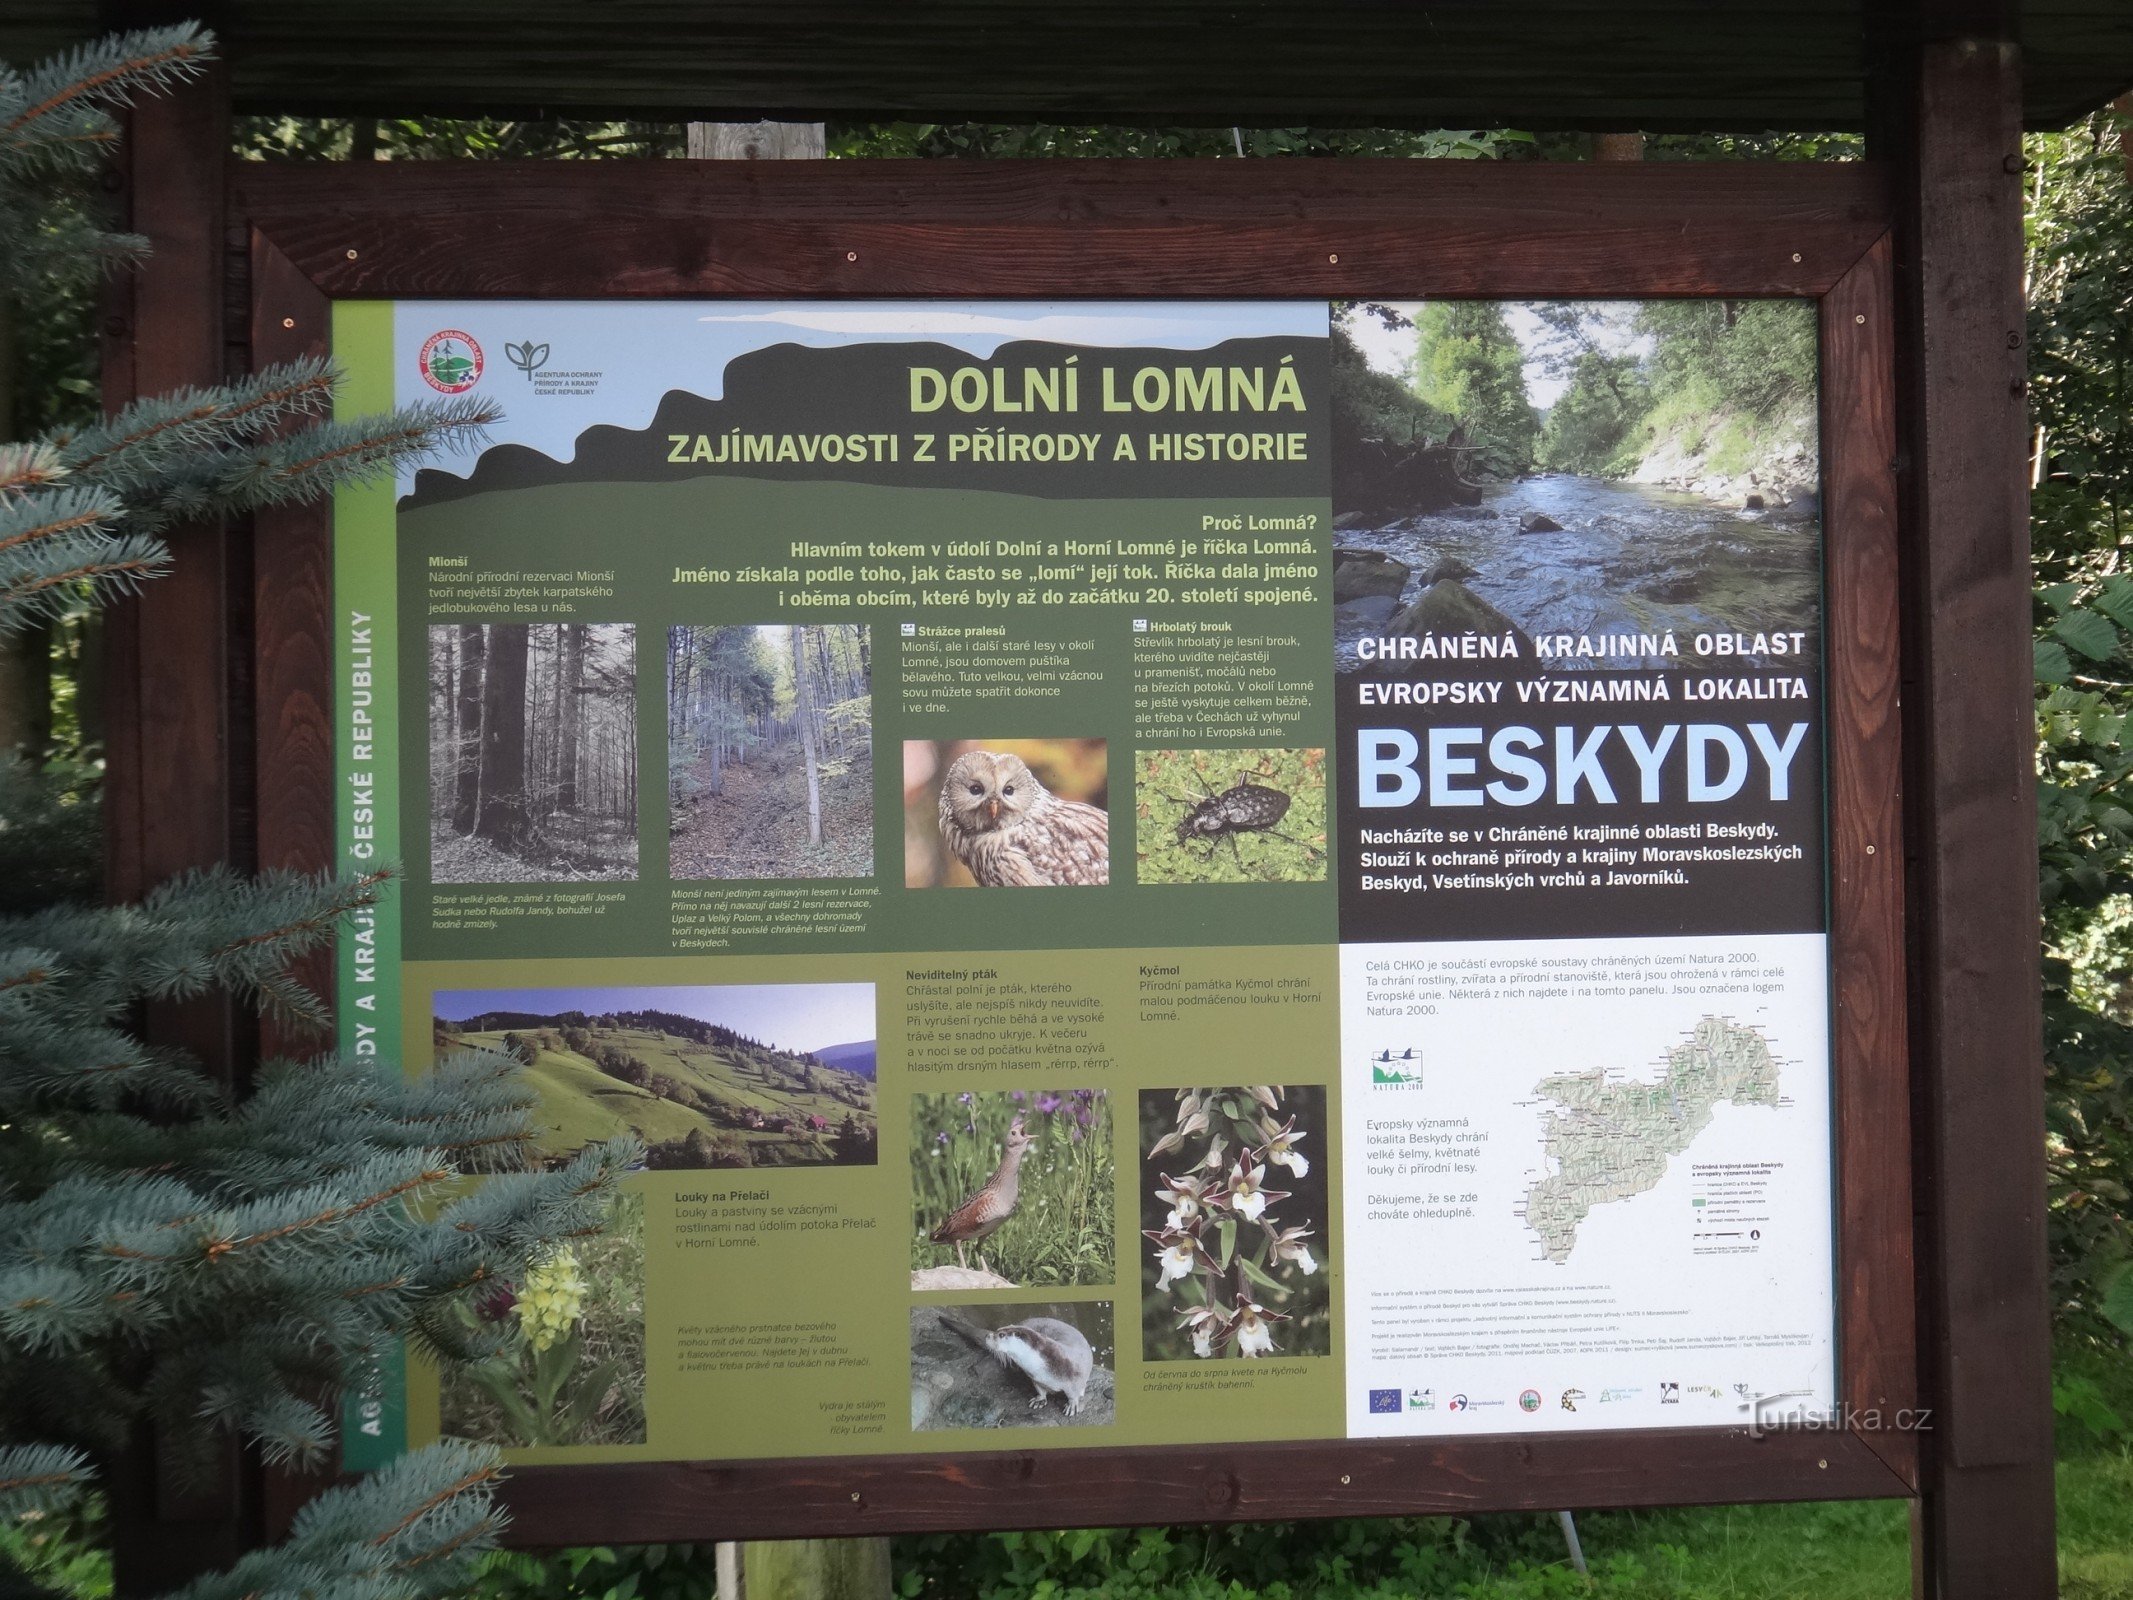 Dolní Lomná sulla storia e la natura